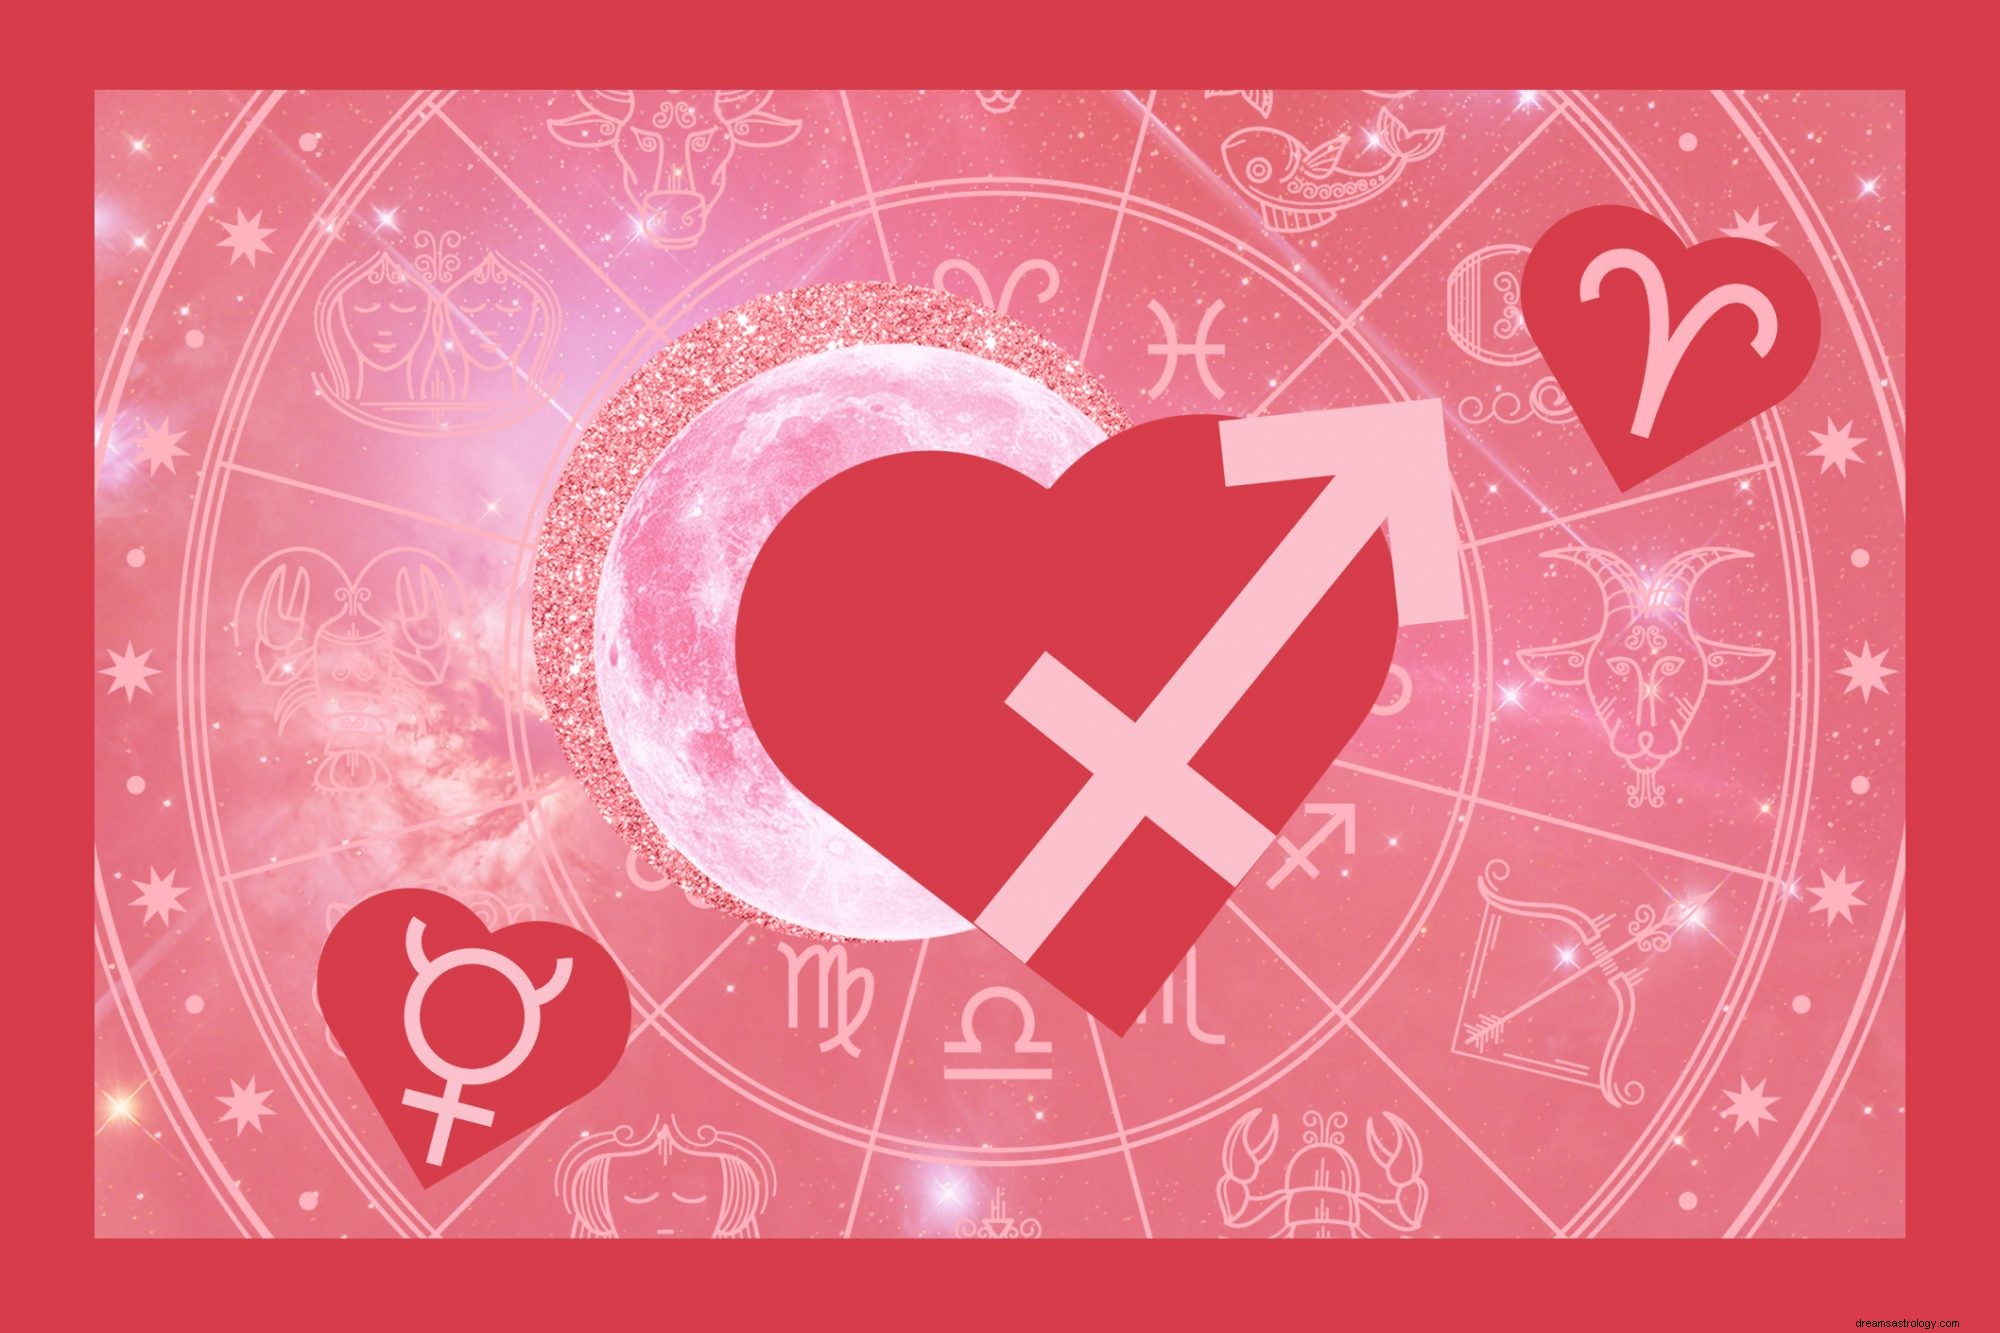 Aqui está o que a astrologia prevê para o seu dia dos namorados este ano 